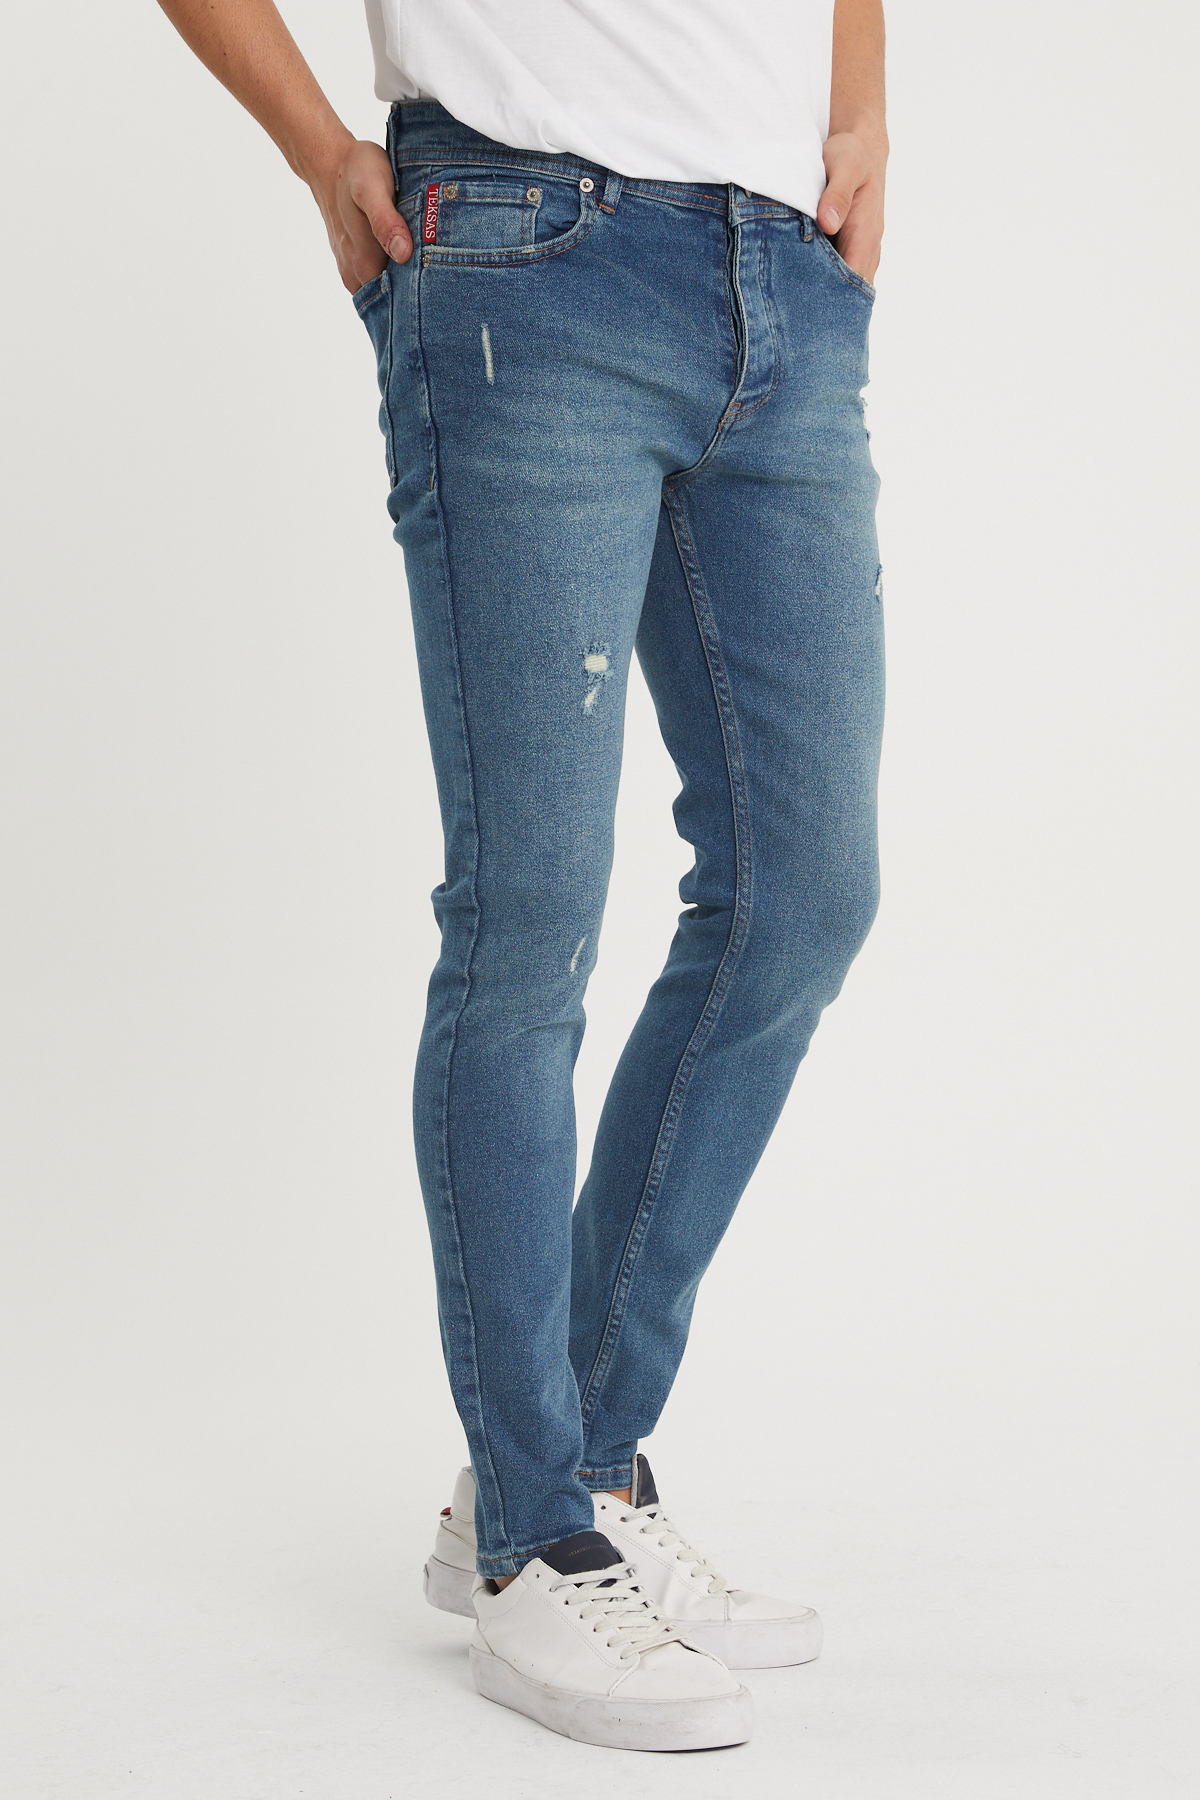 Mavi Slim Fit Jean Pantolon 1KXE5-44352-12 